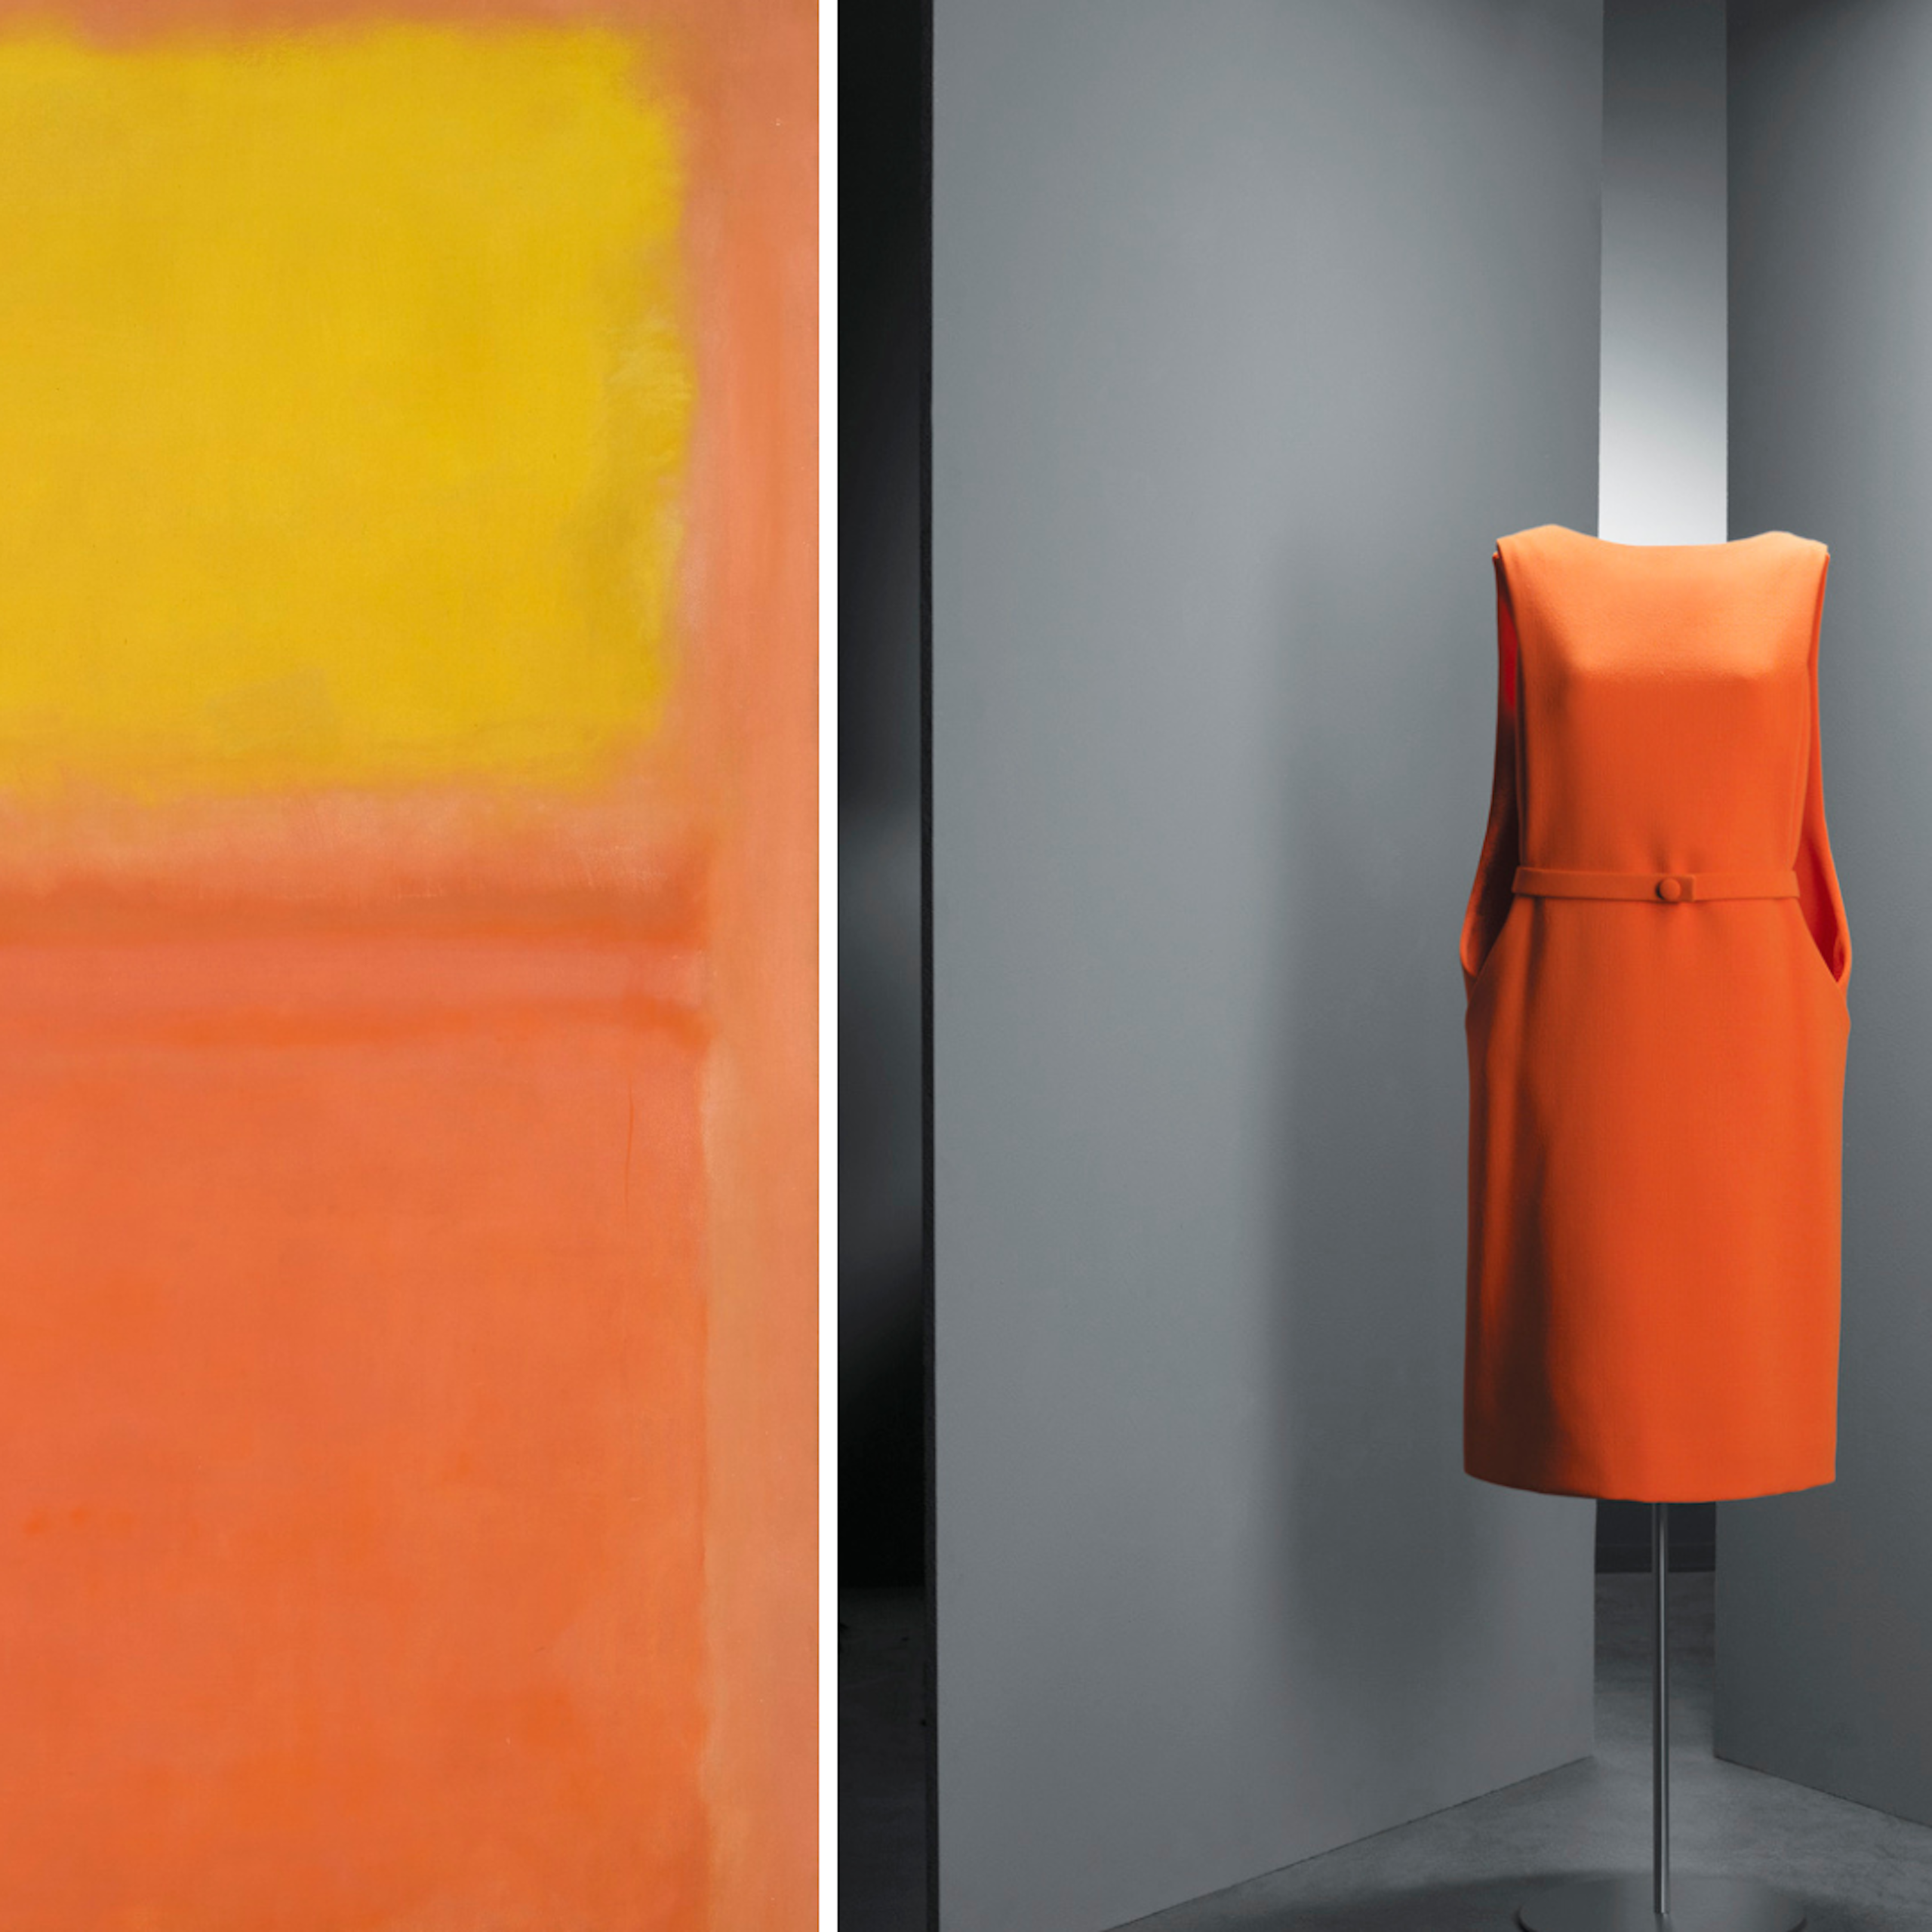 A la derecha, _Naranja y amarillo_ de Mark Rothko. A la izquierda, vestido de día en crepé de lana naranja, de Cristóbal Balenciaga, 1967.